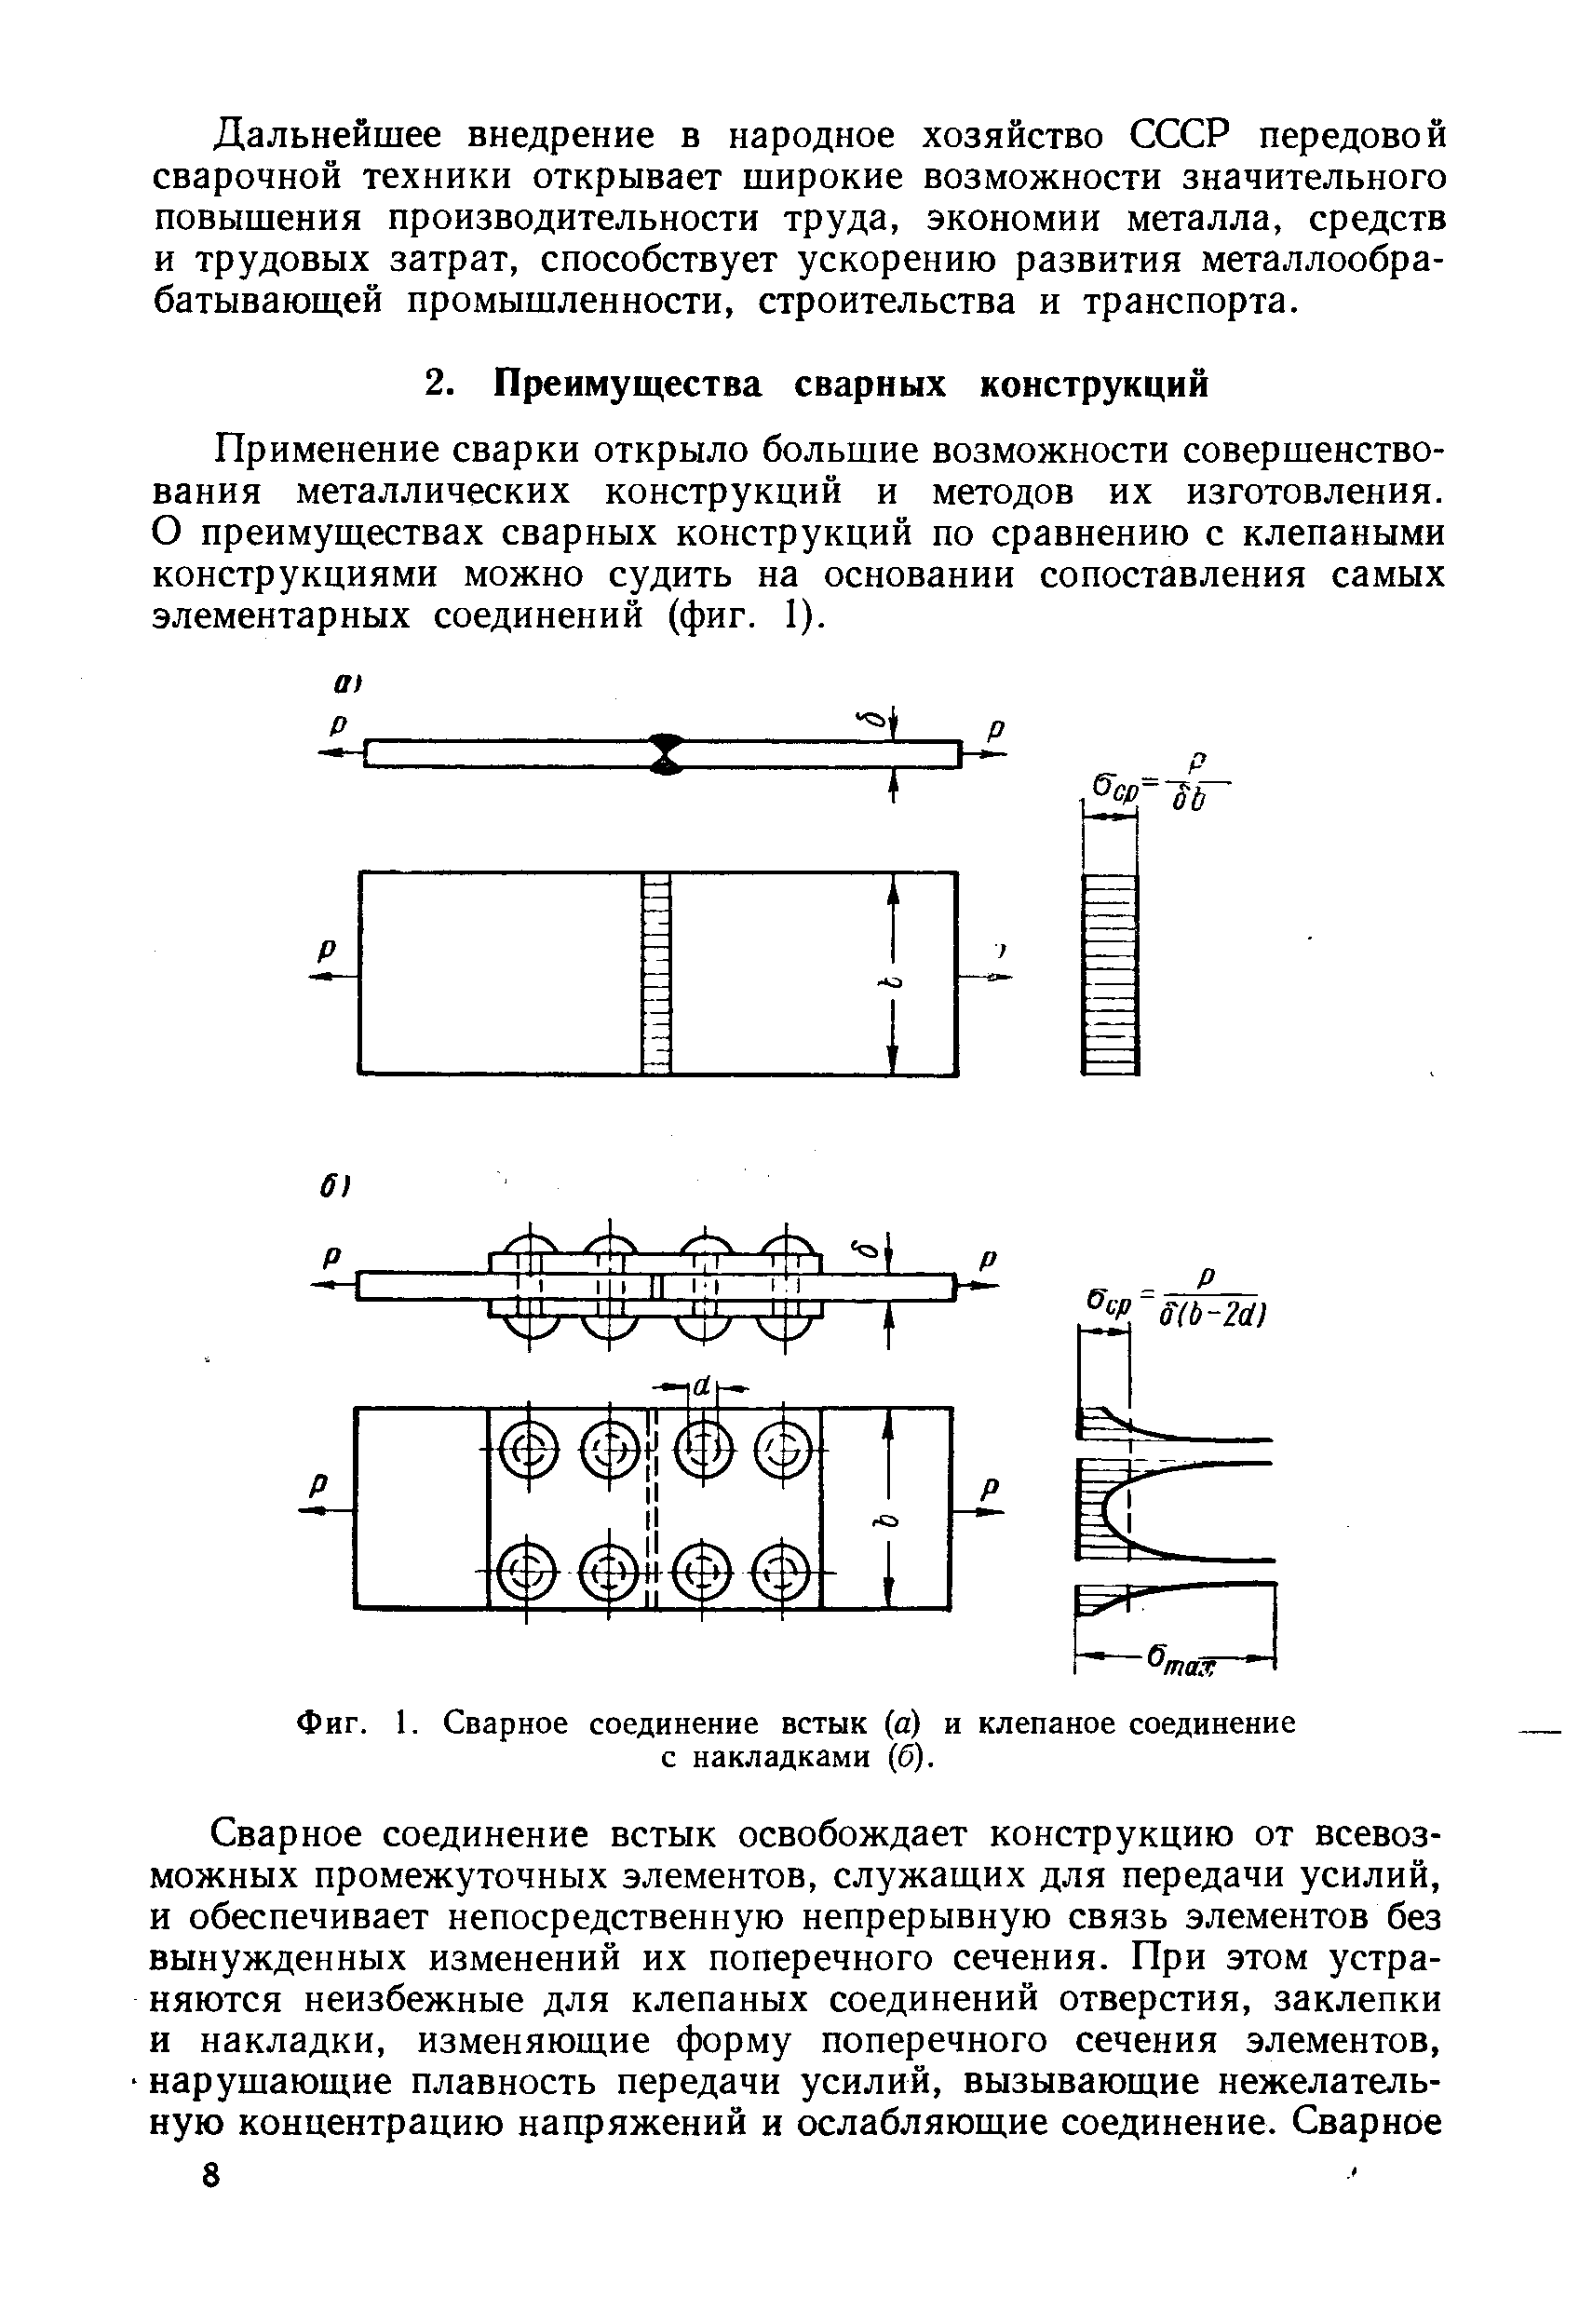 Фиг. 1. Сварное соединение встык (а) и клепаное соединение с накладками (б).
